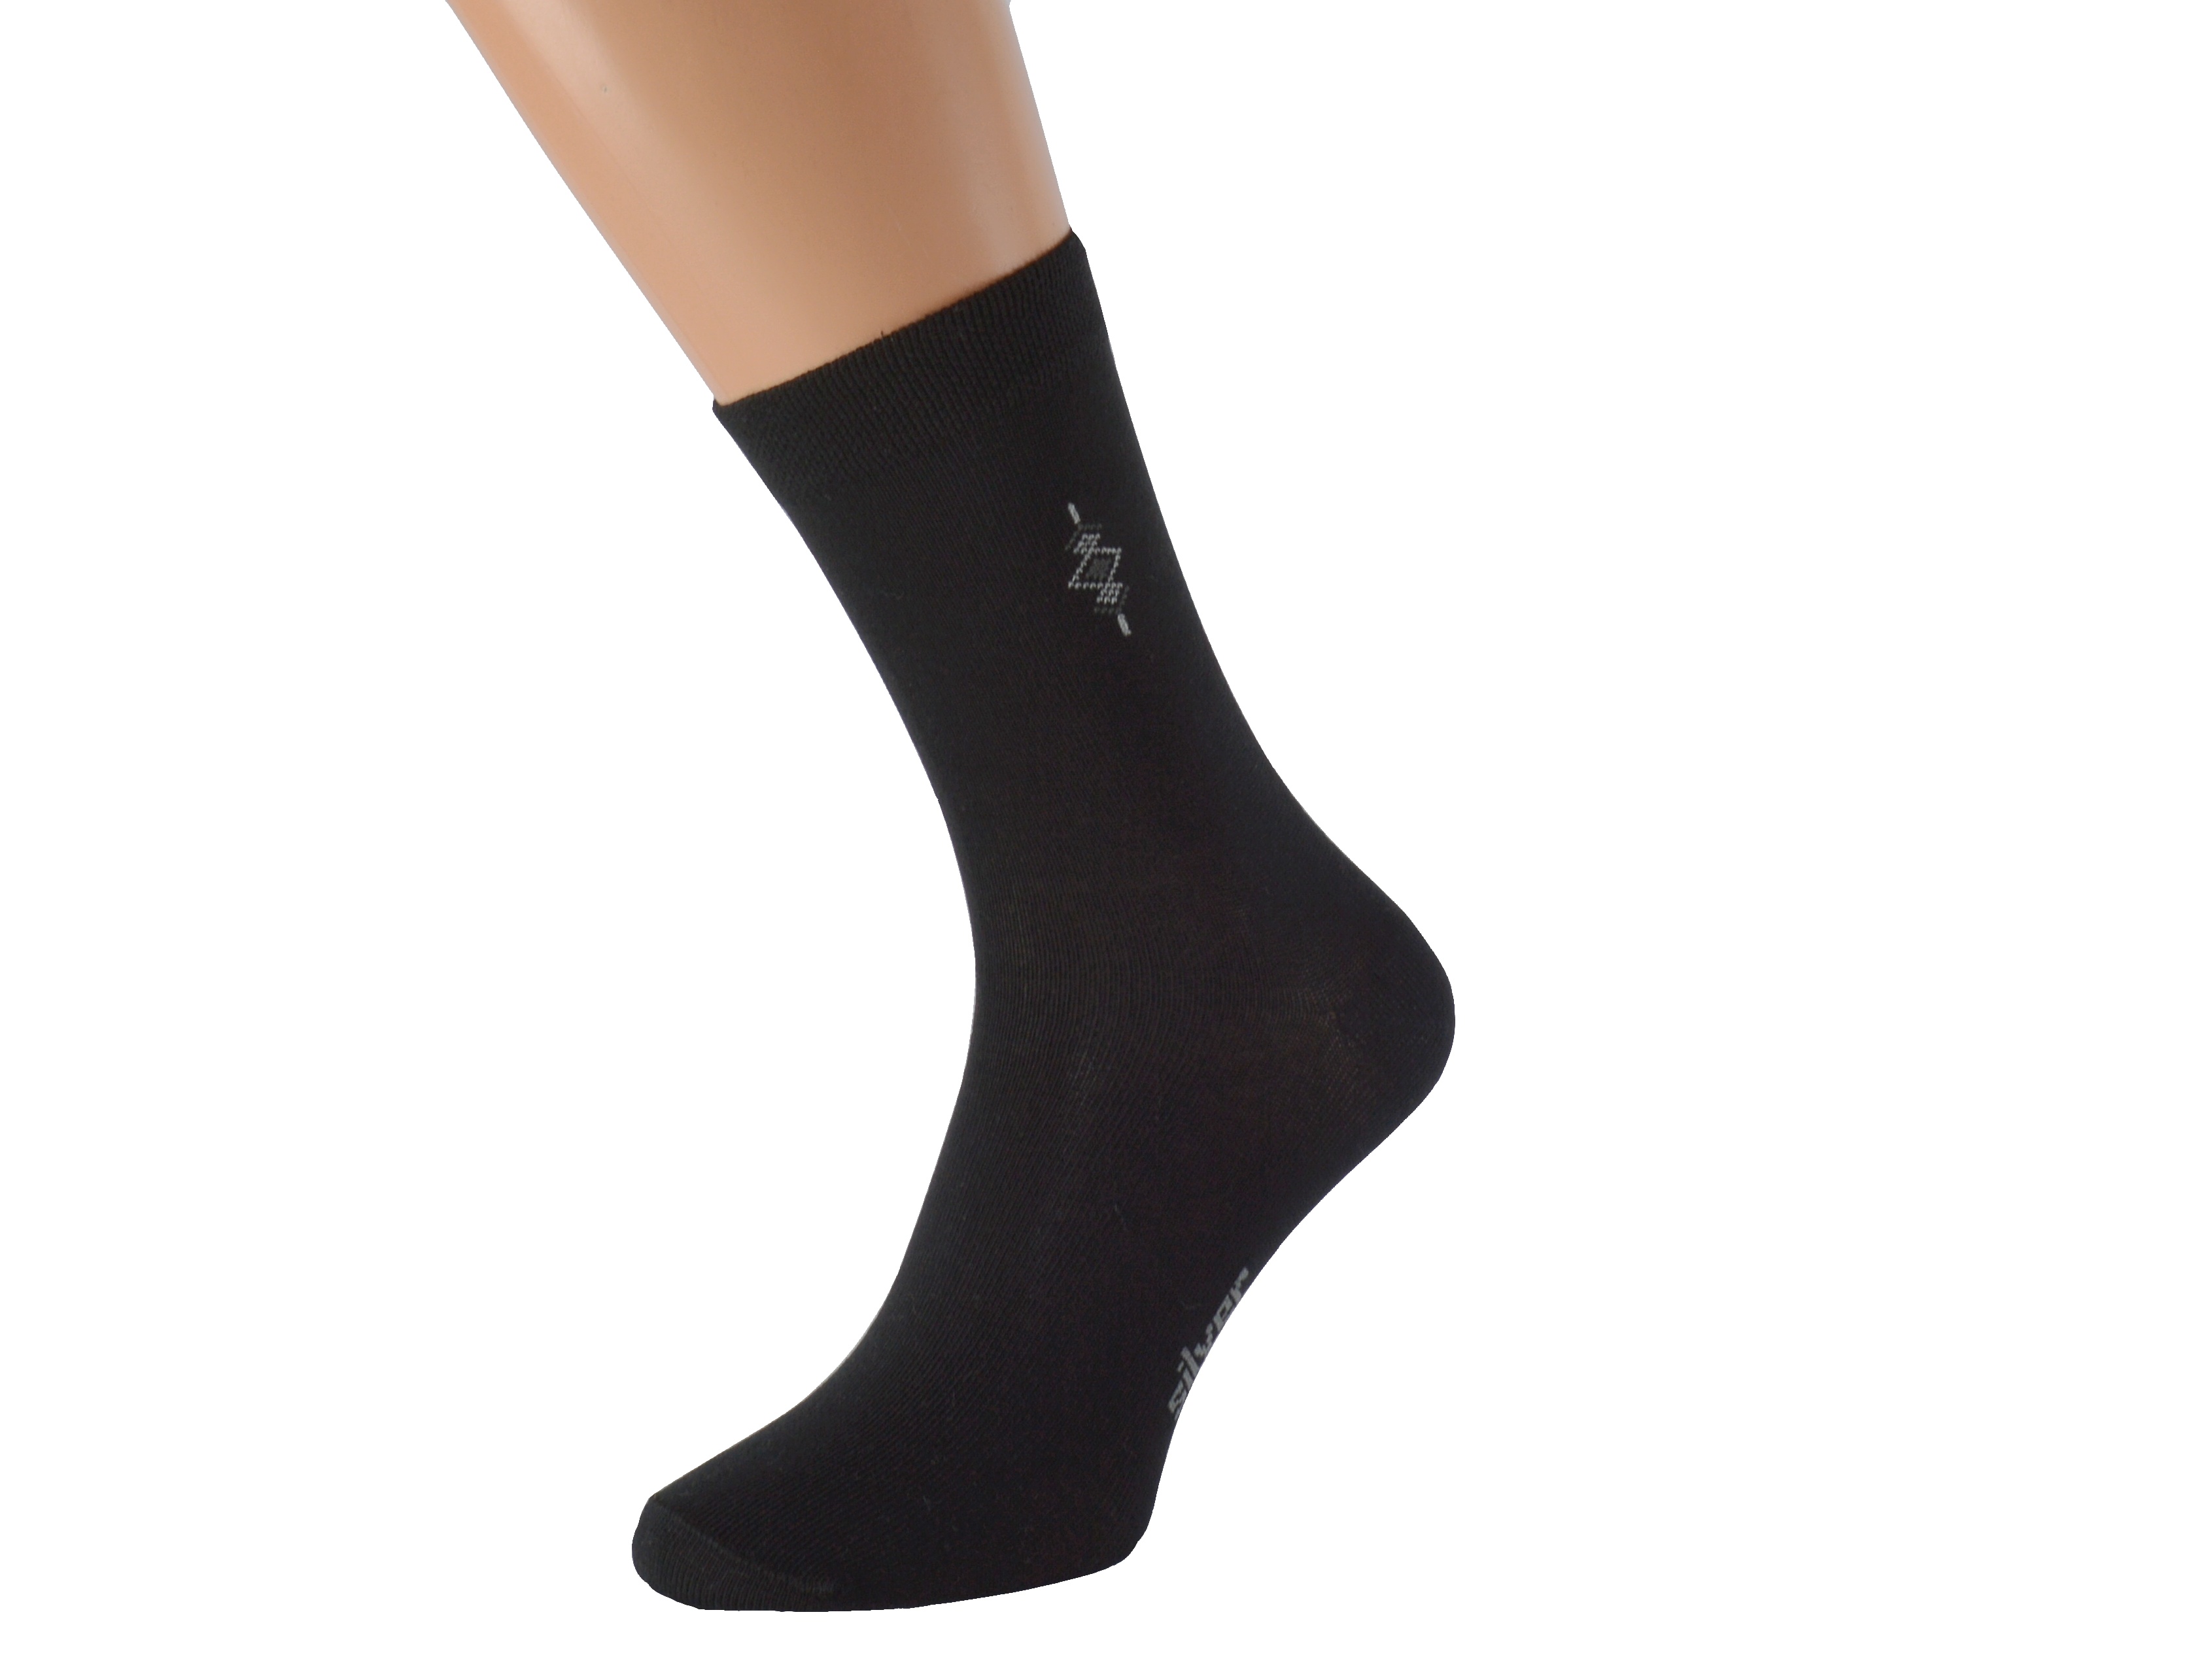 Antibakteriální ponožky se stříbrem BOBOLYC KUKS Barva: Černé, Velikost: EUR 39-42 (UK 6-8)